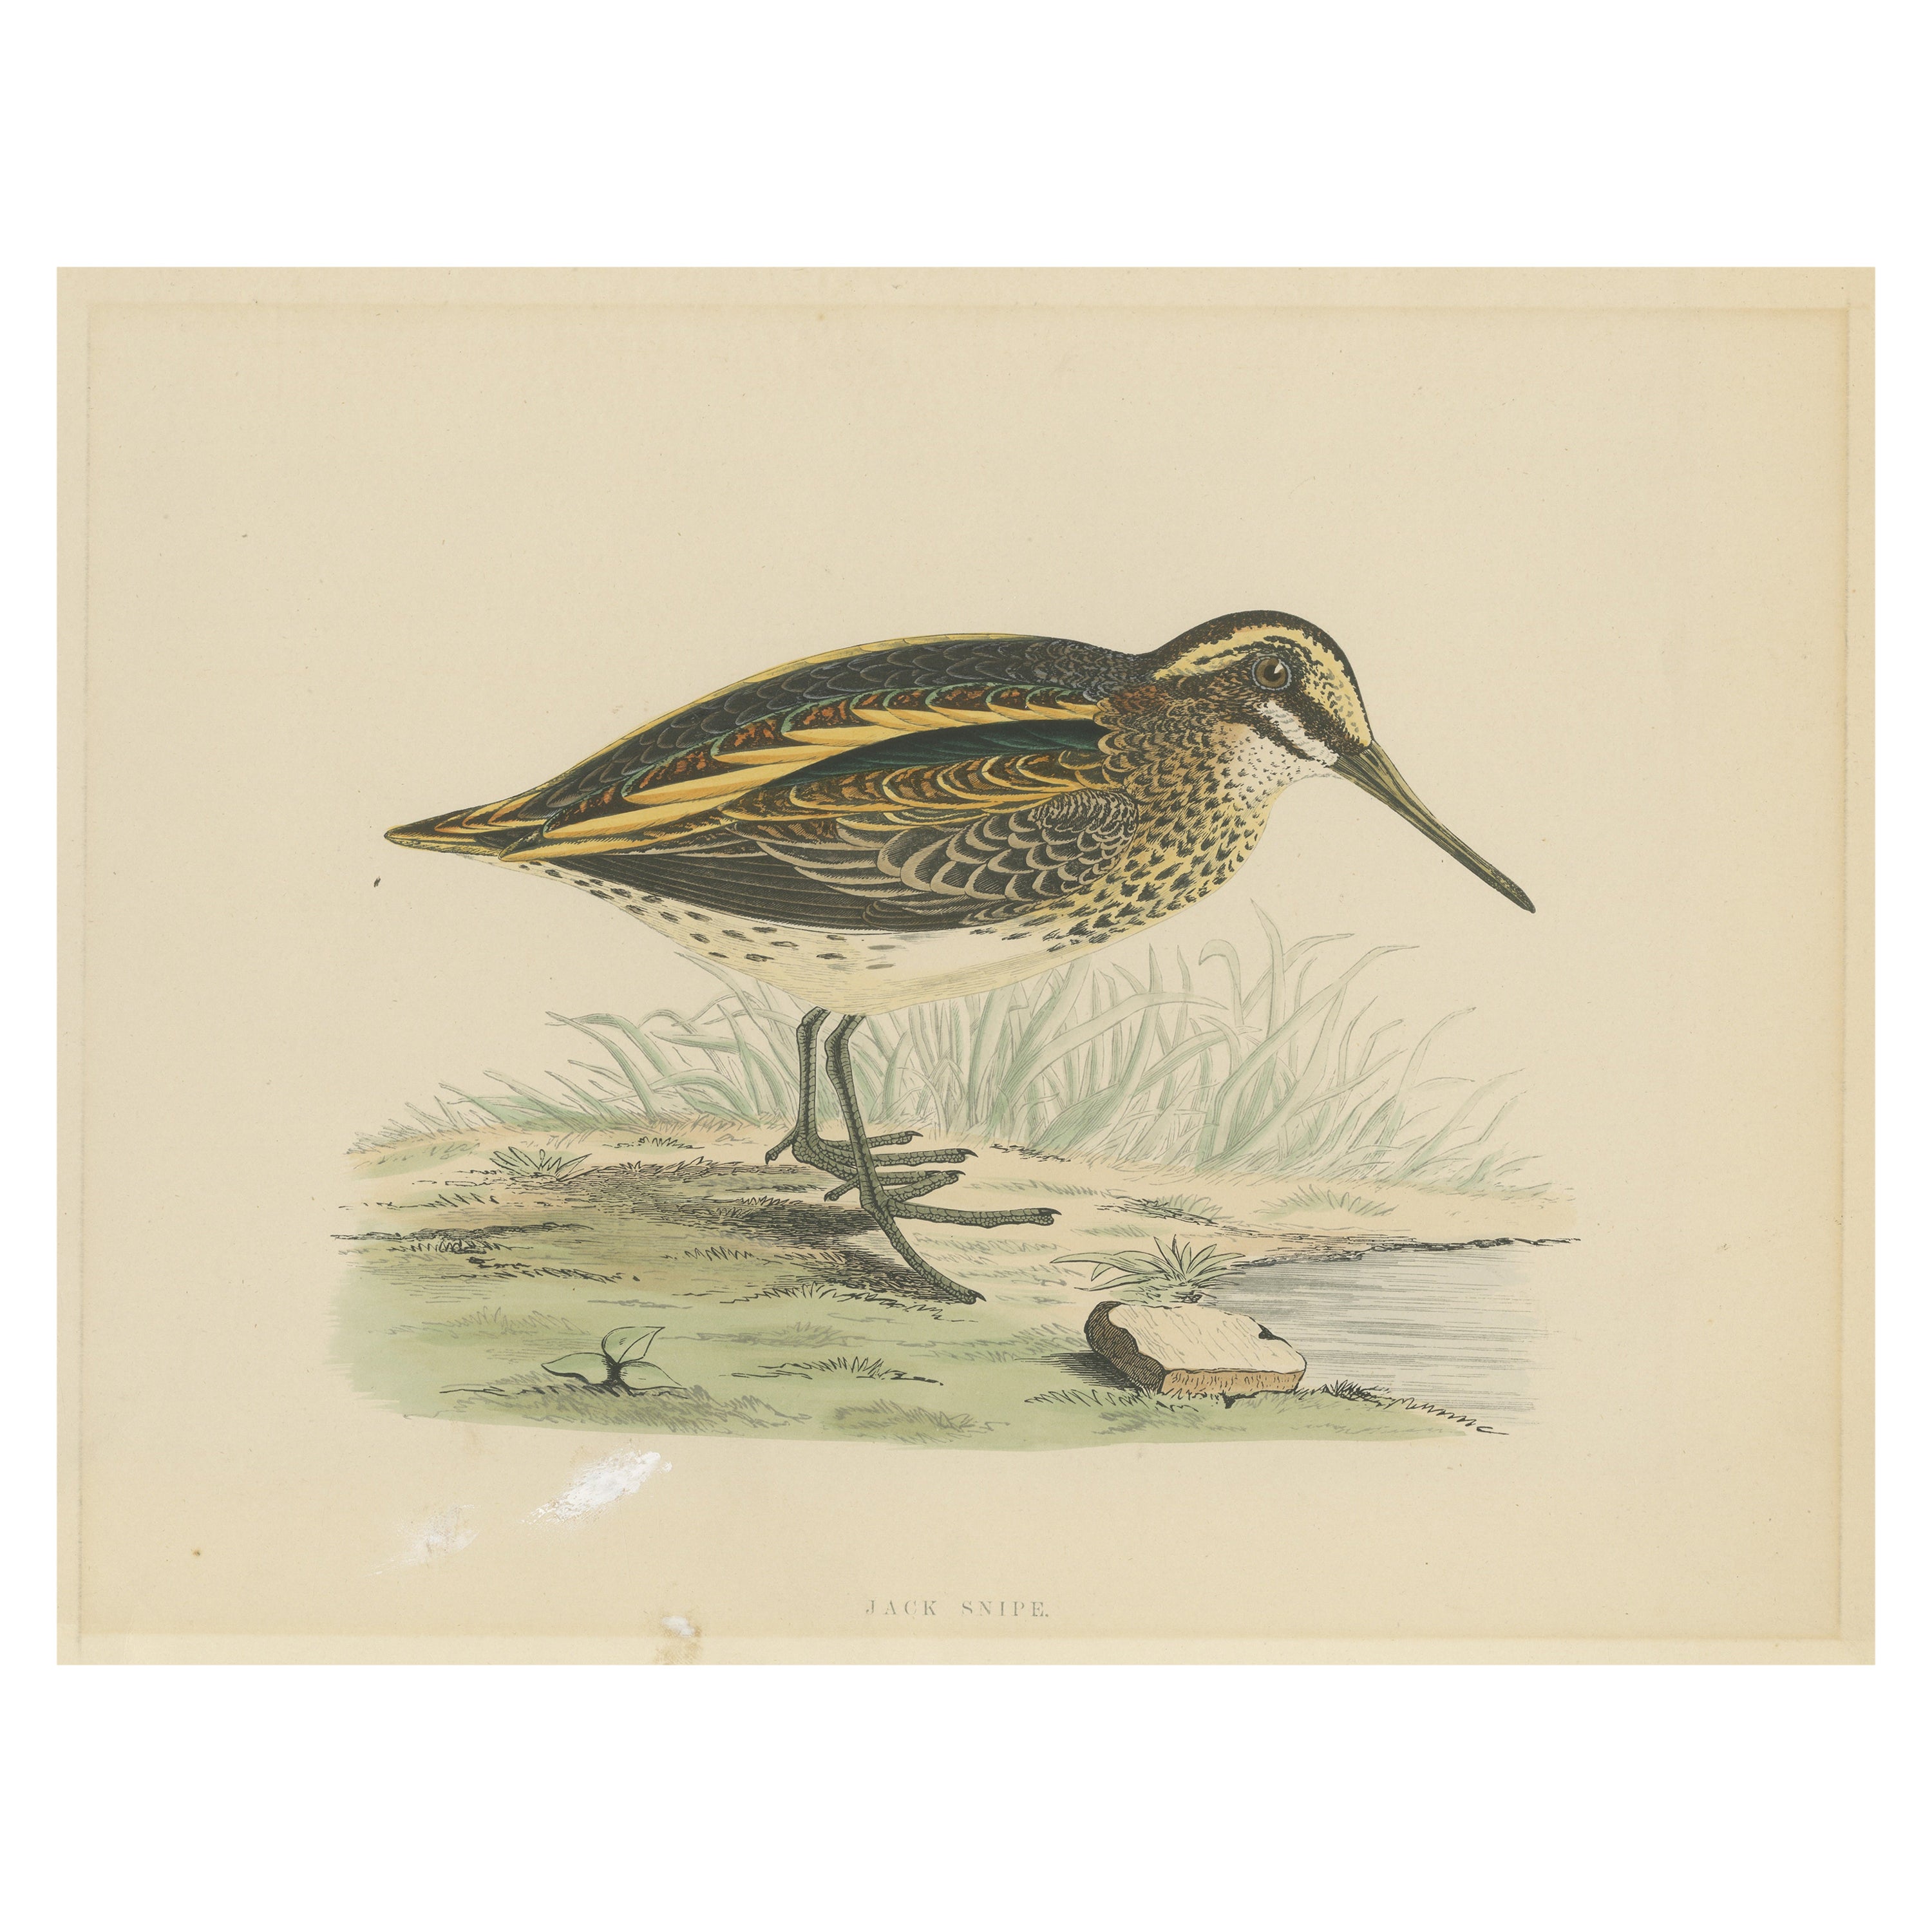 Original Antique Bird Print of a Jack Snipe